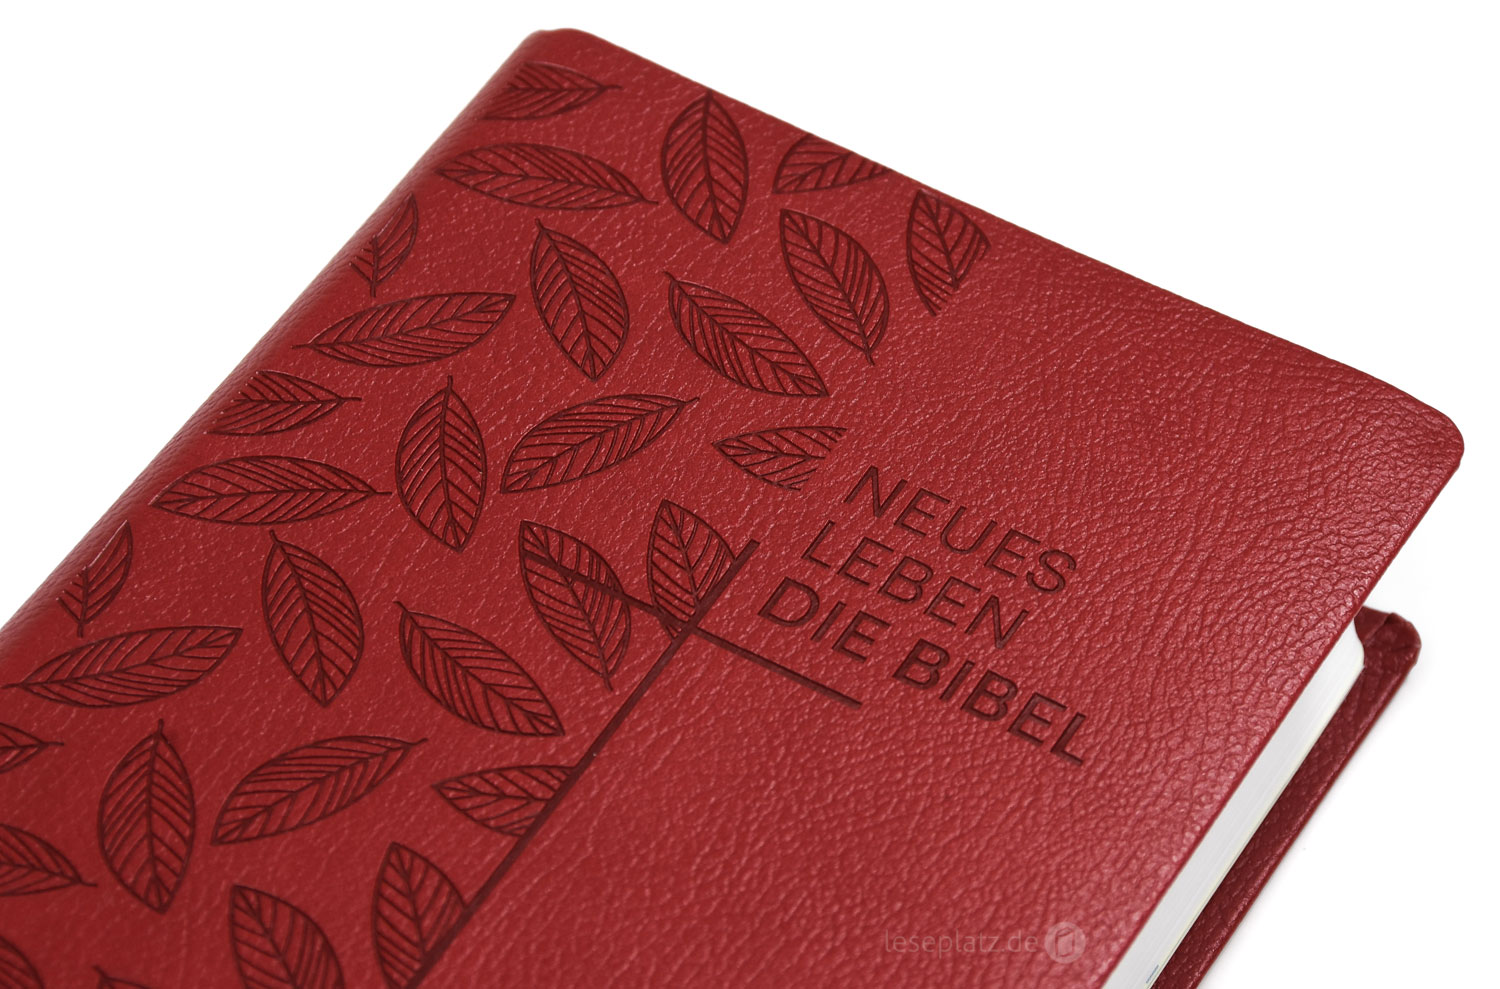 Neues Leben. Die Bibel - Taschenausgabe - Kunstleder rot